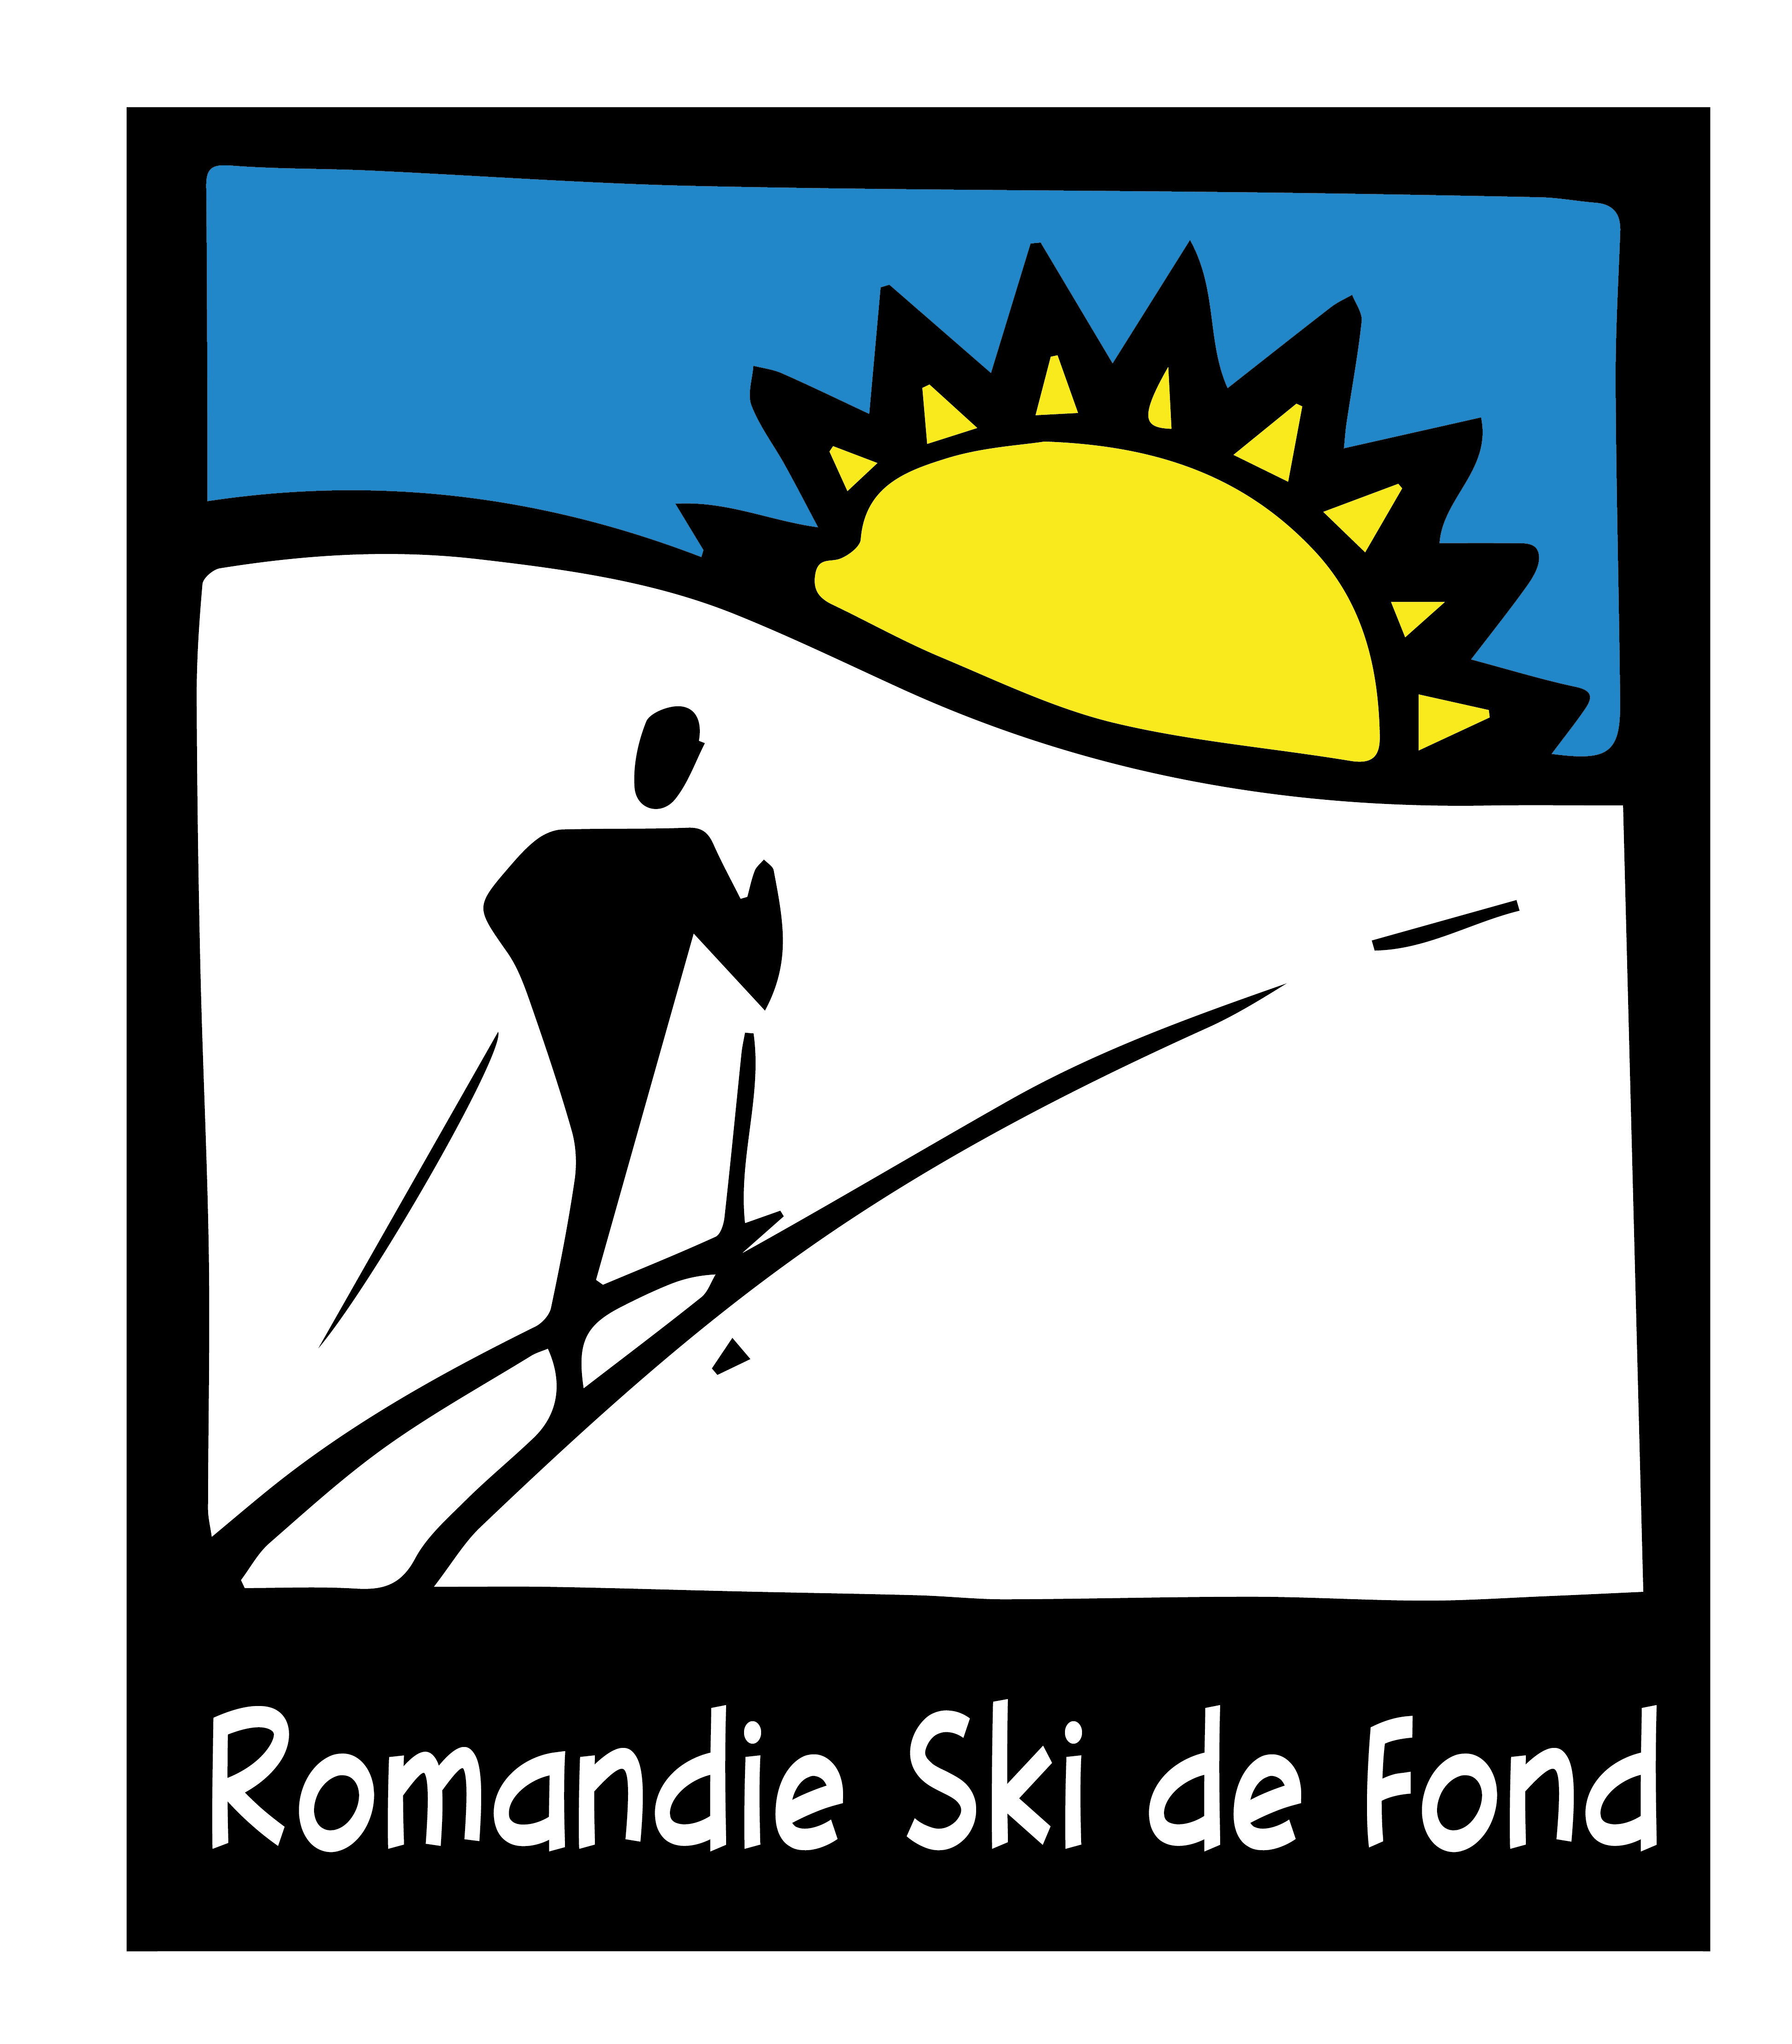 Romandie Ski de Fond